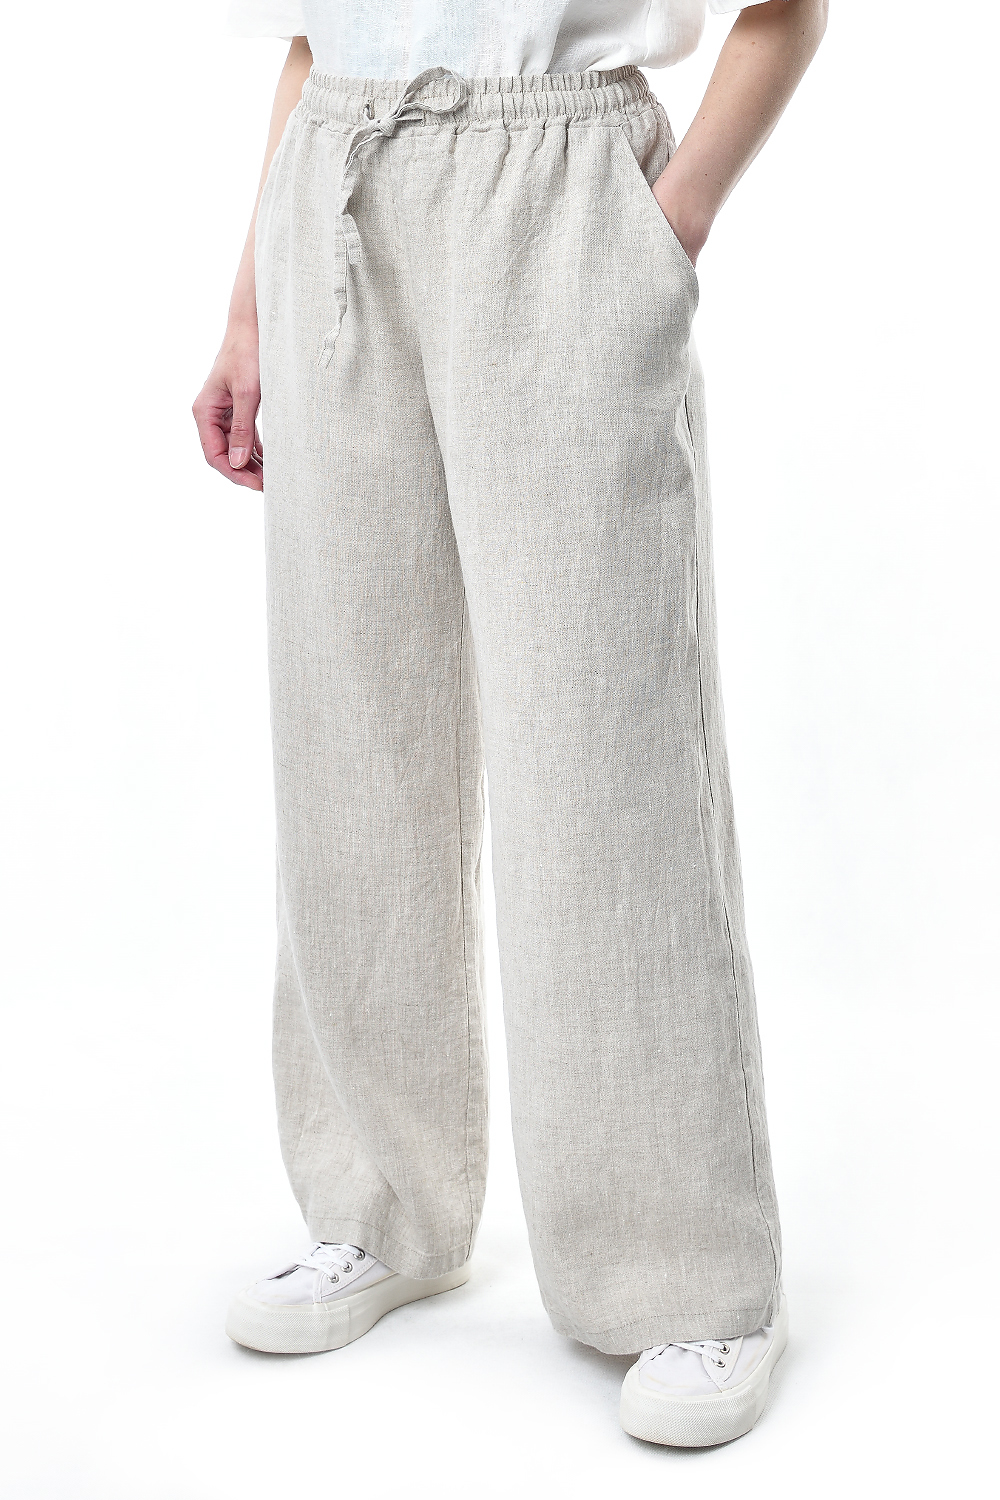 Льняная Горница женские брюки # -004